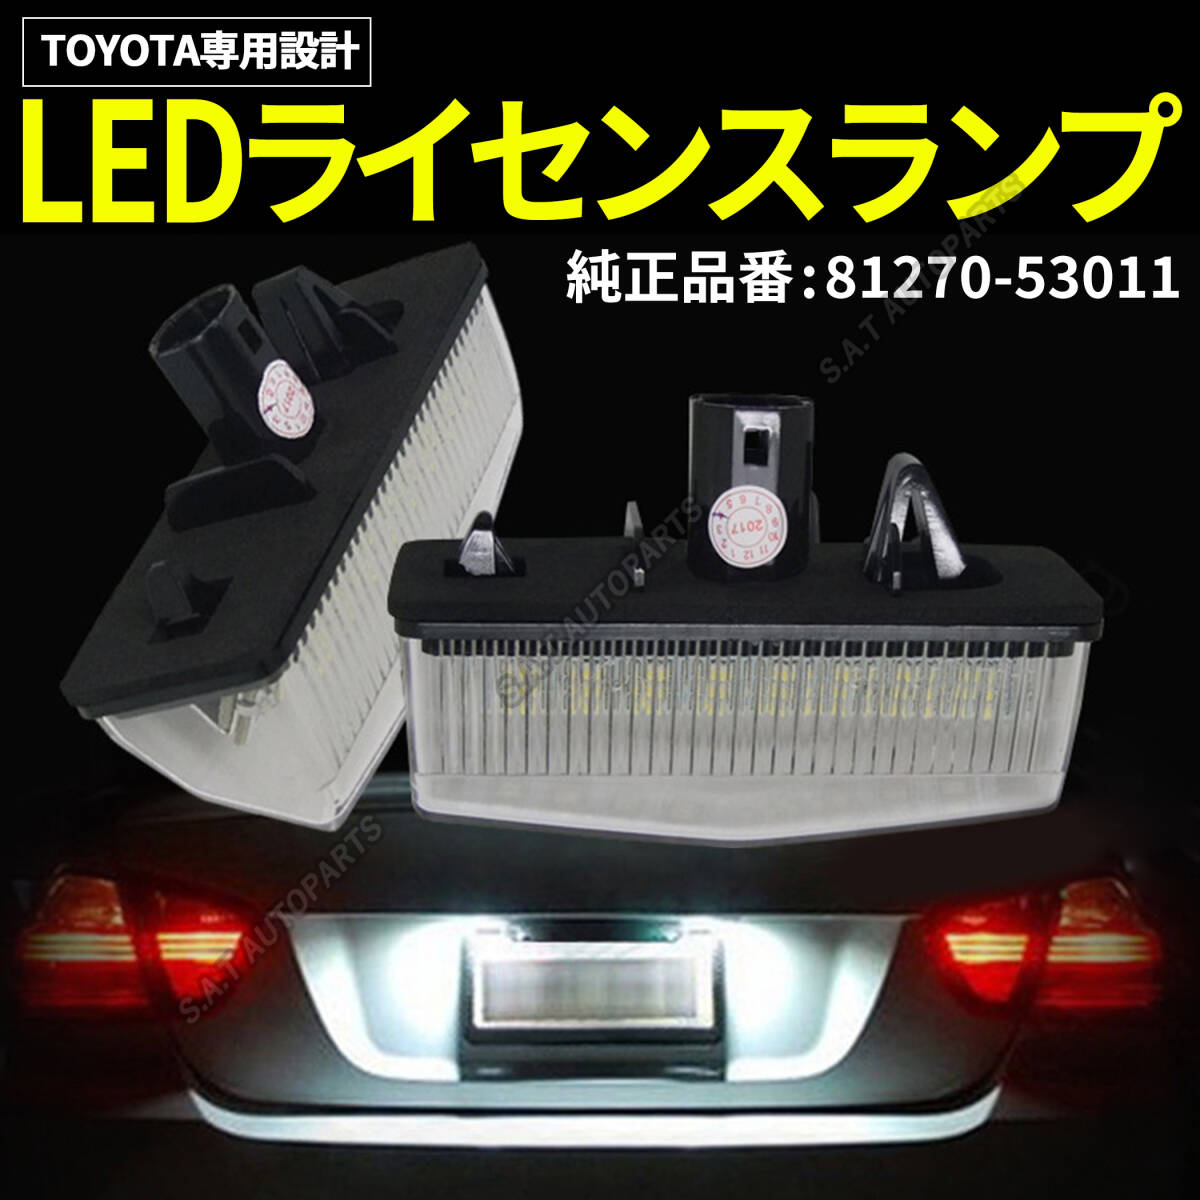 ライセンスランプ トヨタ LED ナンバー灯 左右セット 高輝度 プリウス 20系 30系 白 カプラーオン 交換タイプ ZVW35 ZVW41W ZYX10 SALE_画像1